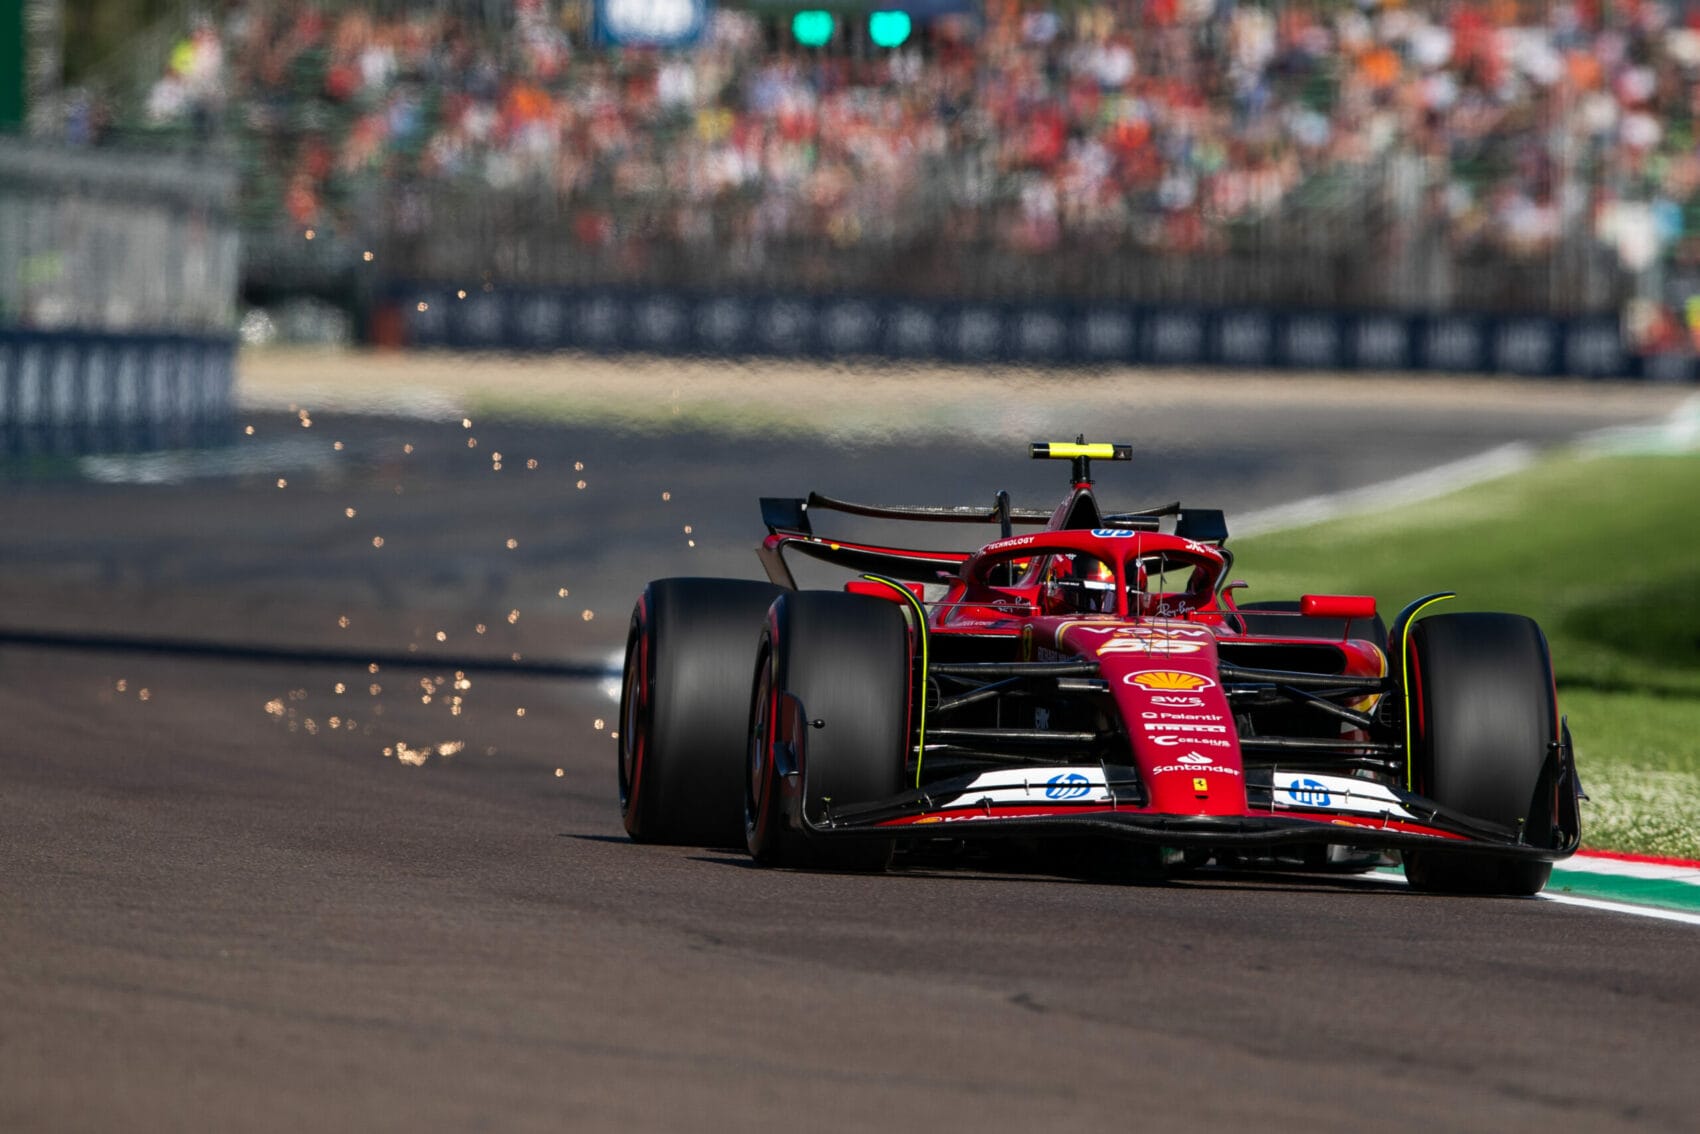 A Ferrari a Red Bull trükkjét tökéletesítve próbál az élre törni